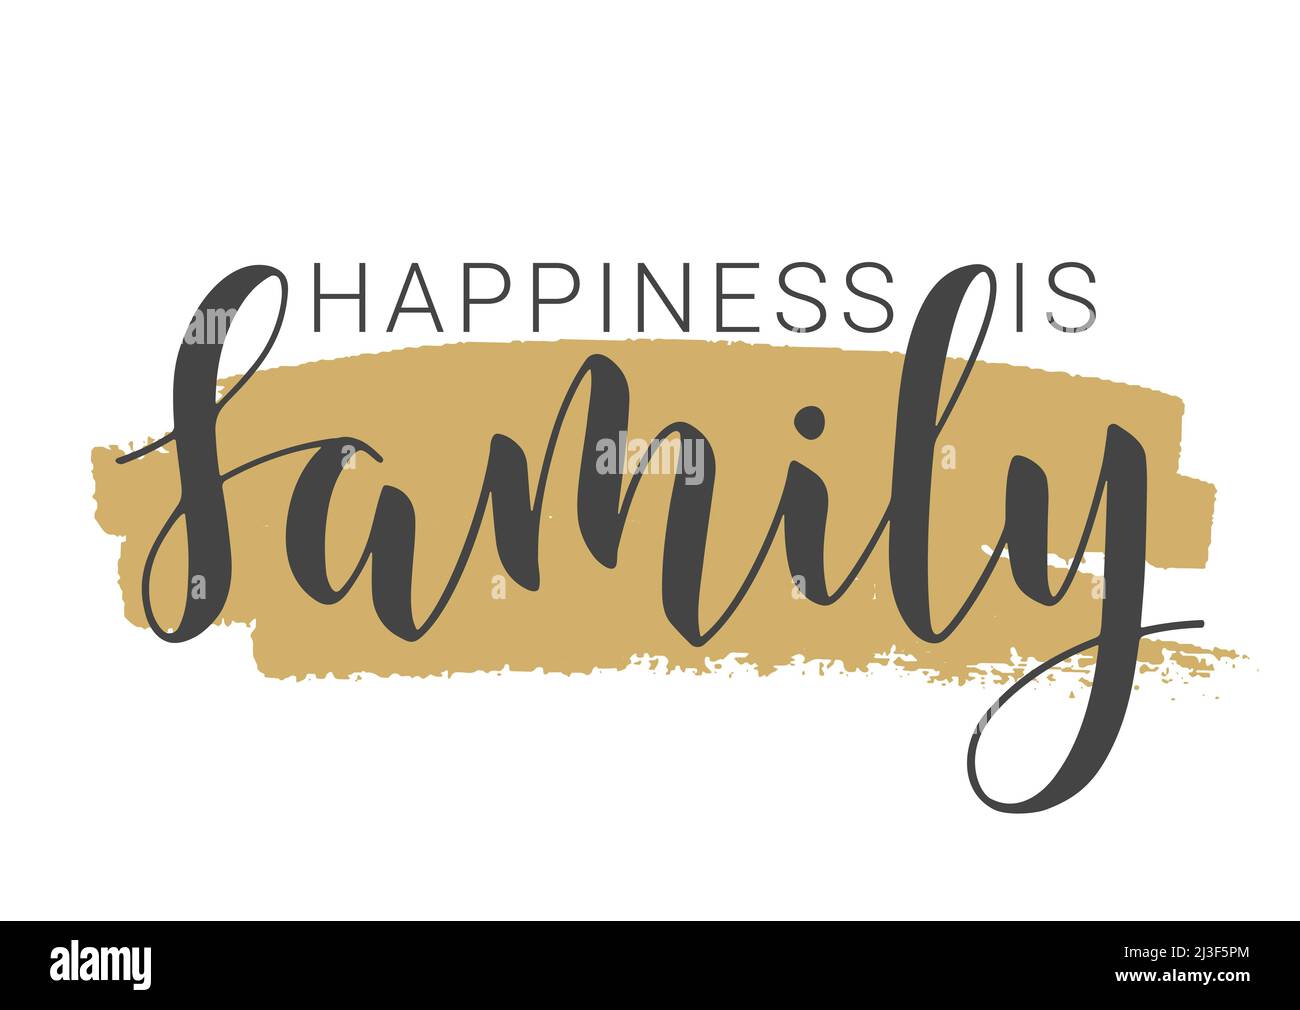 Handgeschriebener Schriftzug von Happiness is Family. Vorlage für Banner, Grußkarte, Postkarte, Einladung, Party, Poster, Print- oder Webprodukt. Stock Vektor